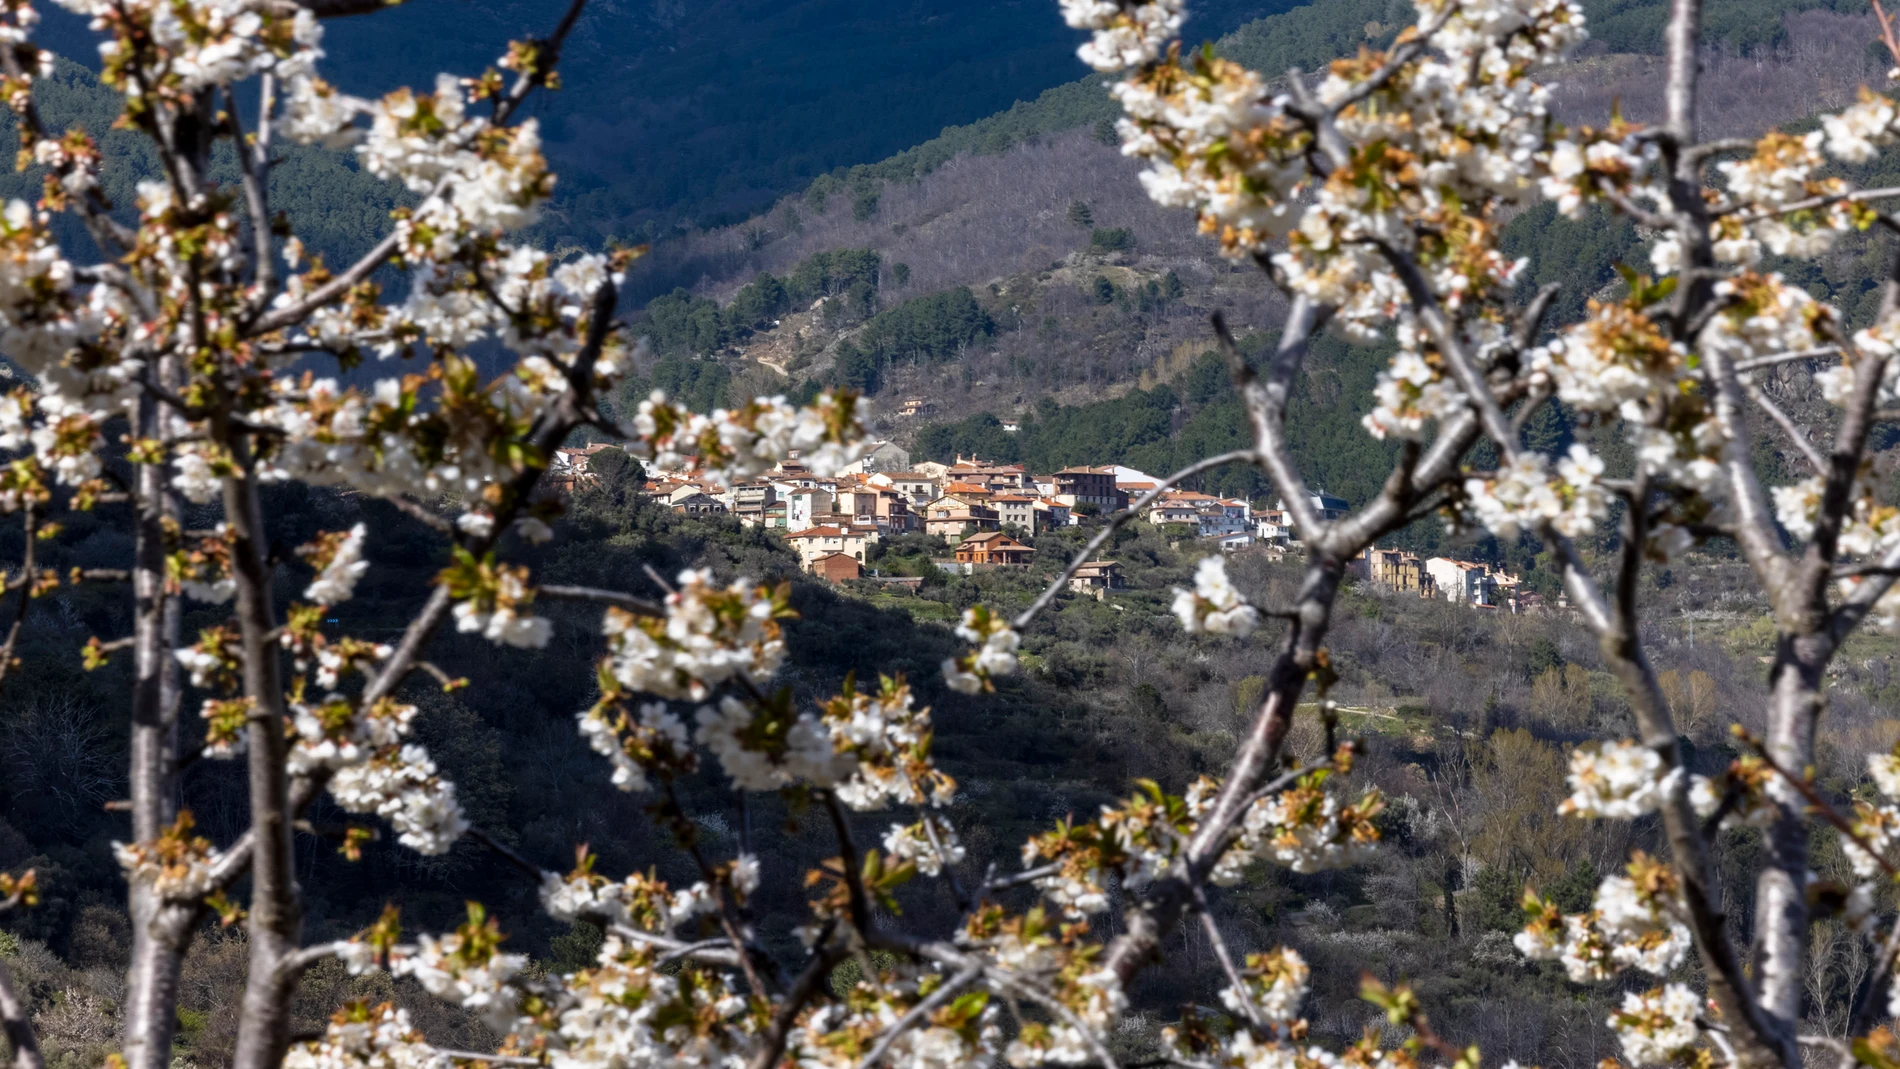 Cerezos en flor en el Valle del Tiétar (Sierra de Gredos, Ávila), Guía  Repsol